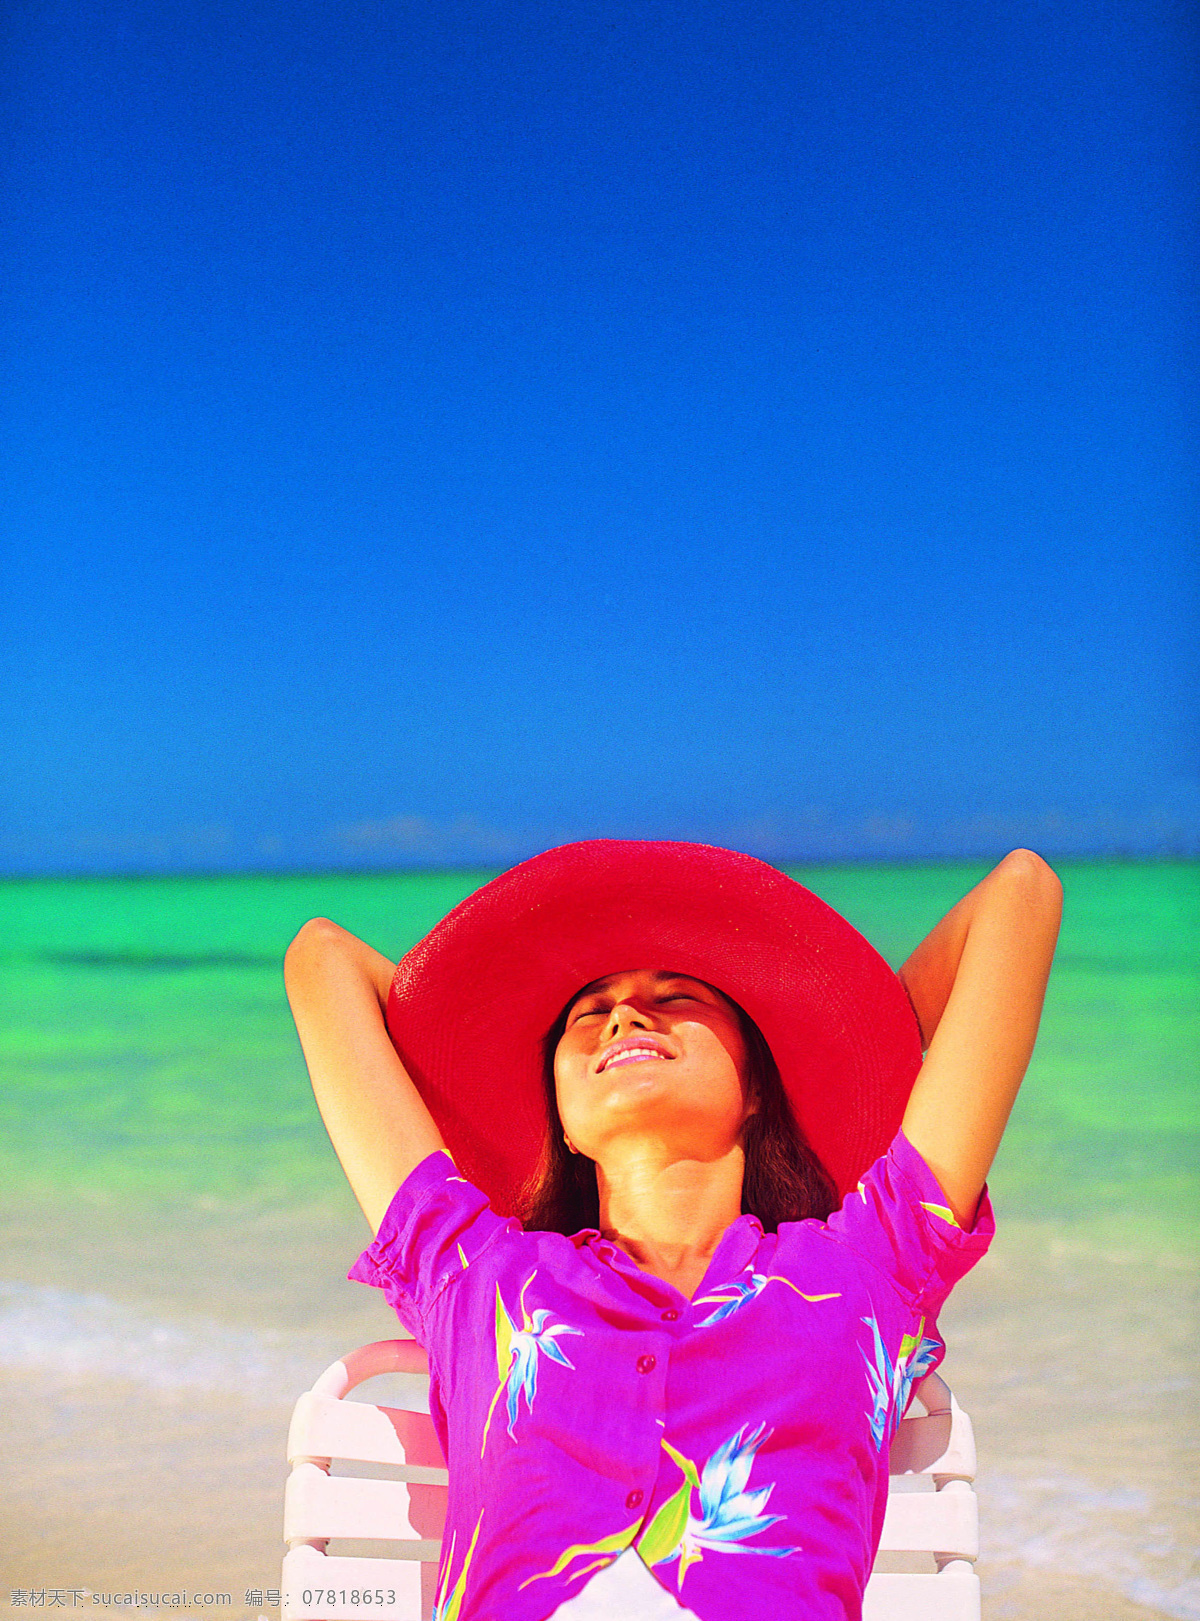 晒太阳 时尚 美女图片 阳光沙滩 美丽海滩 大海 海面 日光浴 性感美女 沙滩美女 生活人物 人物图片